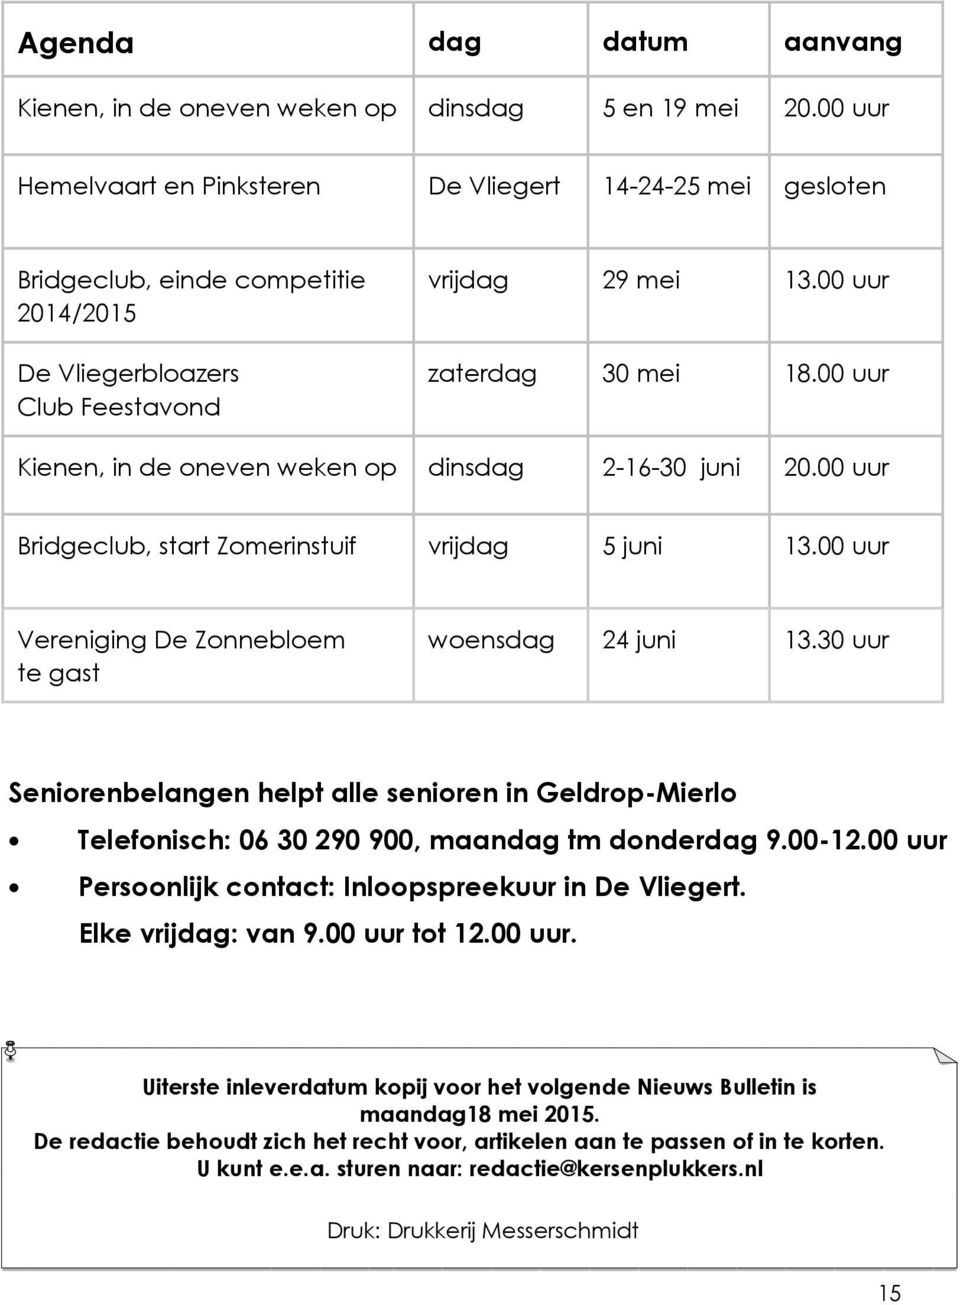 00 uur Kienen, in de oneven weken op dinsdag 2-16-30 juni 20.00 uur Bridgeclub, start Zomerinstuif vrijdag 5 juni 13.00 uur Vereniging De Zonnebloem te gast woensdag 24 juni 13.